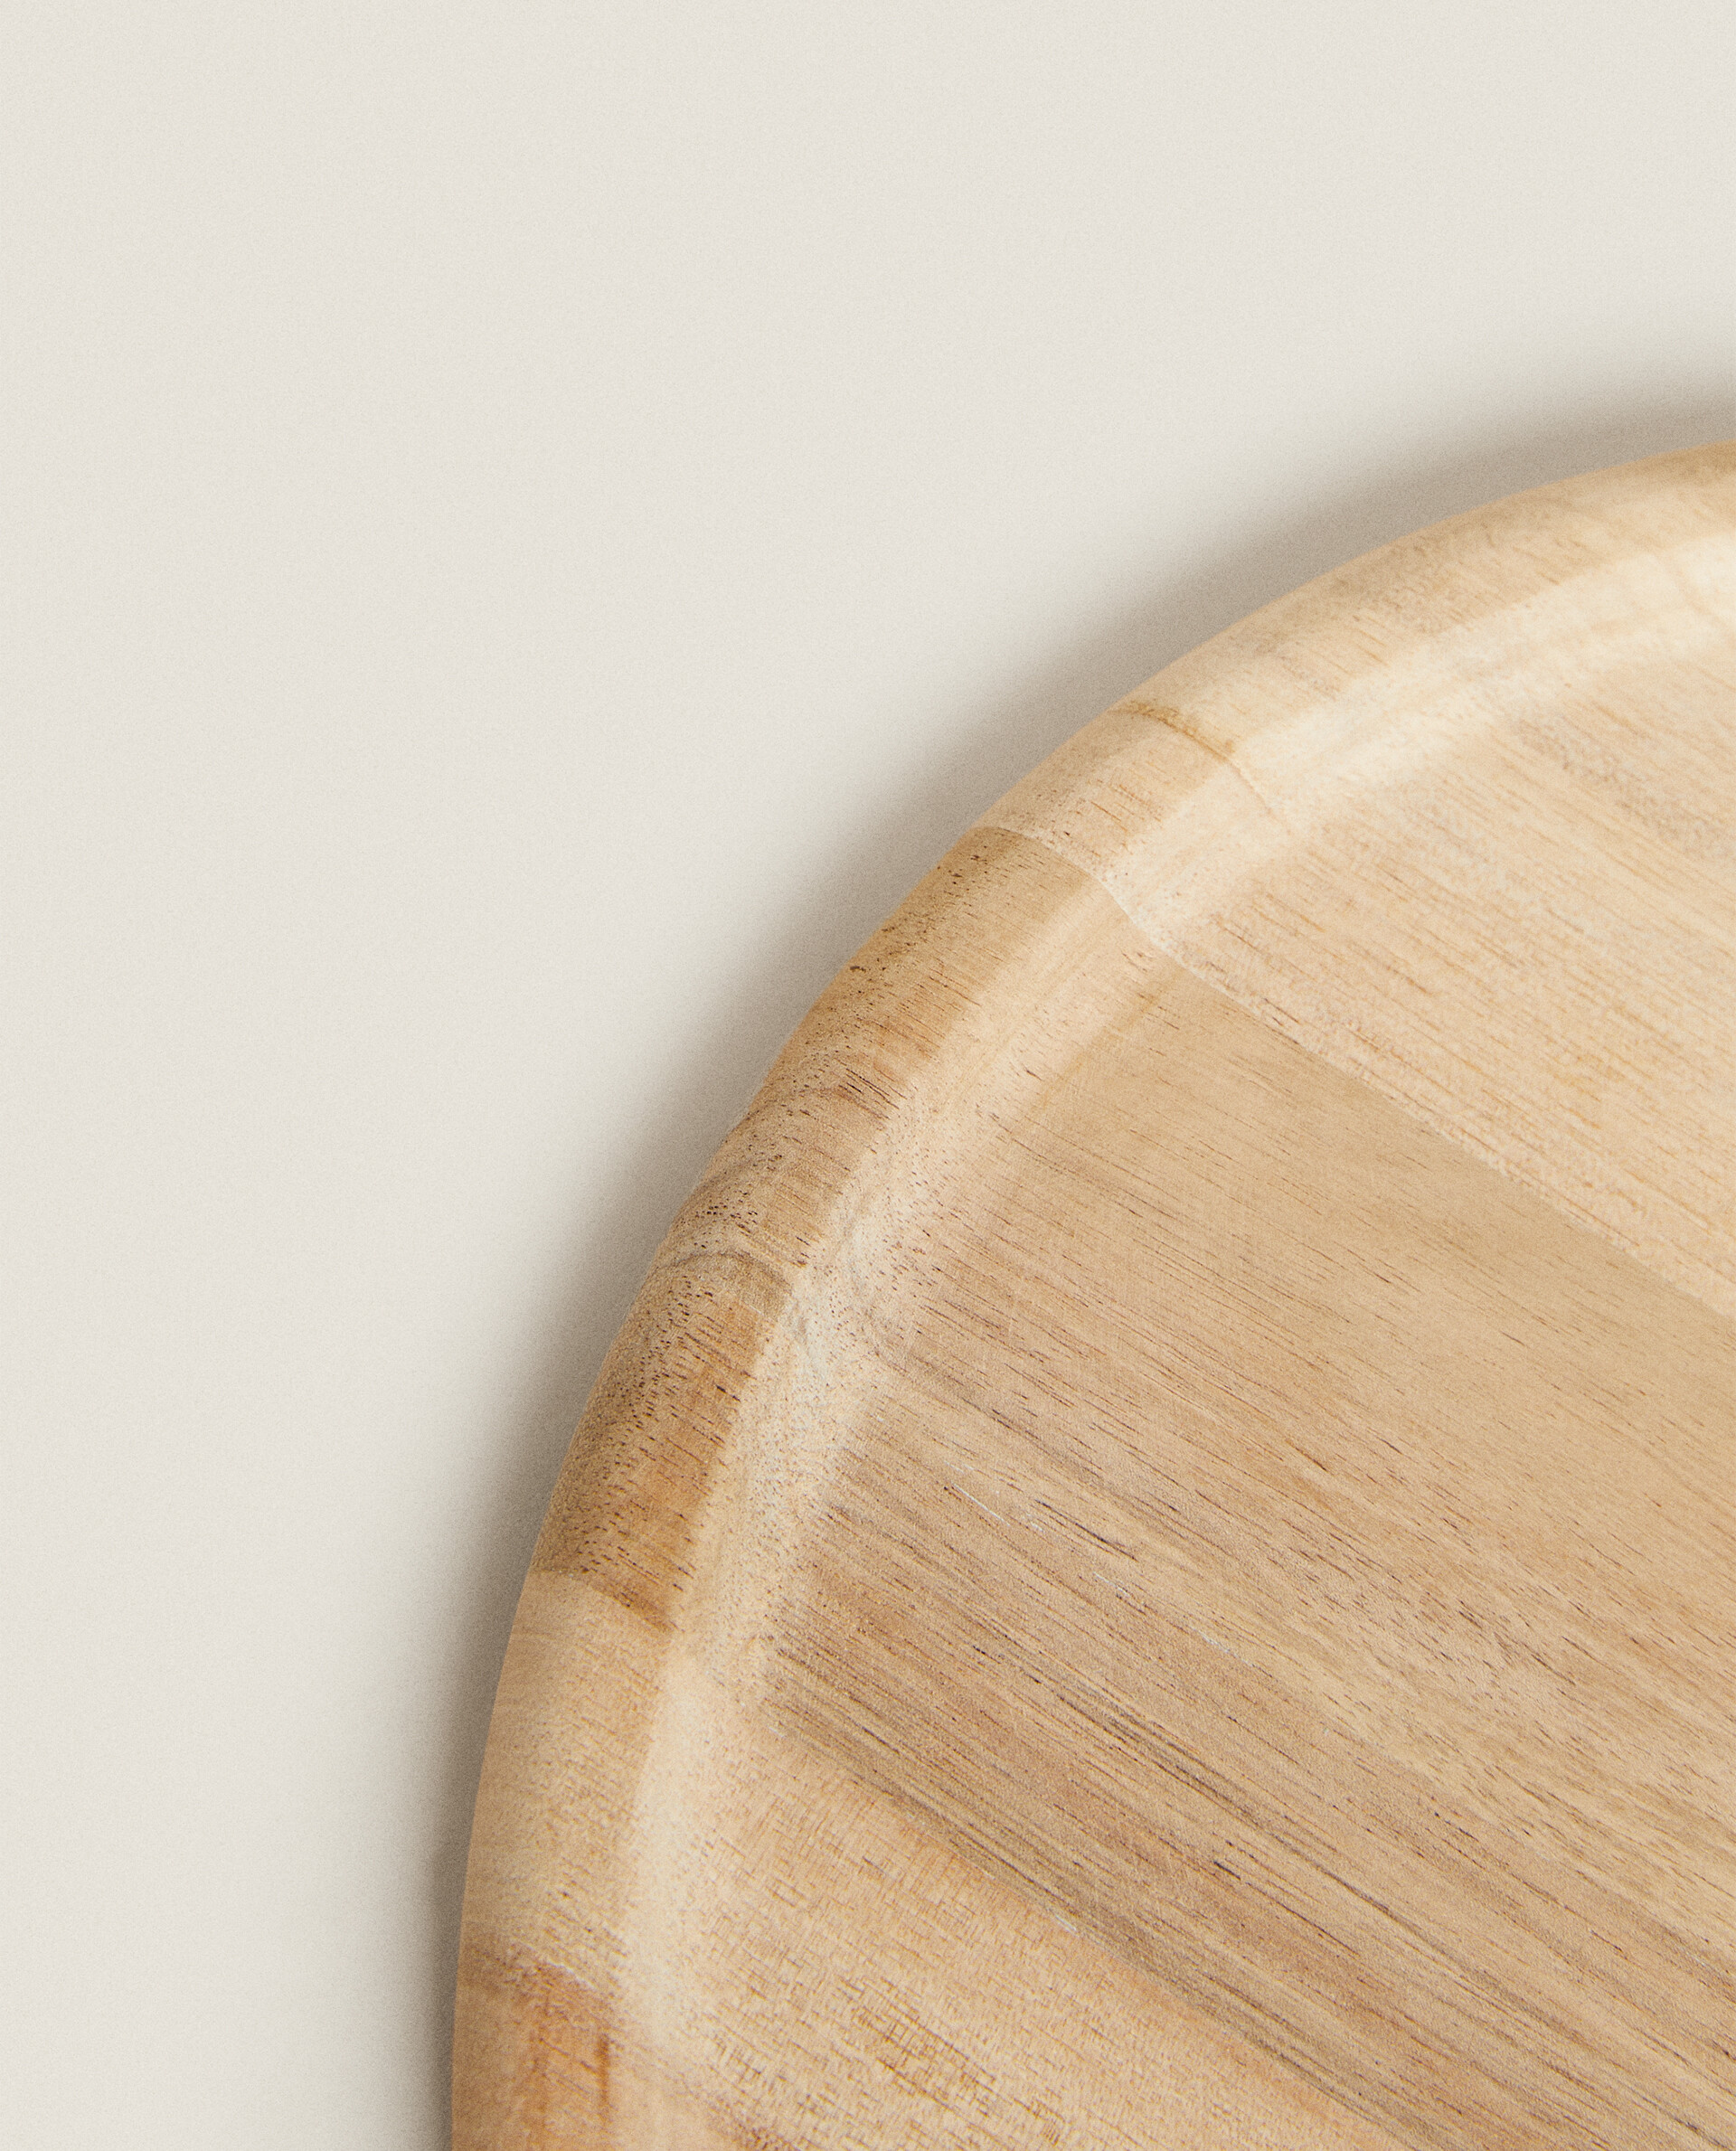 tabla de pizza resistente a los cortes con división en 6 para piezas de tamaño uniforme plato de madera para pizza Oriamo® plato de pizza de bambú de 33 cm de diámetro tabla de cortar de madera 